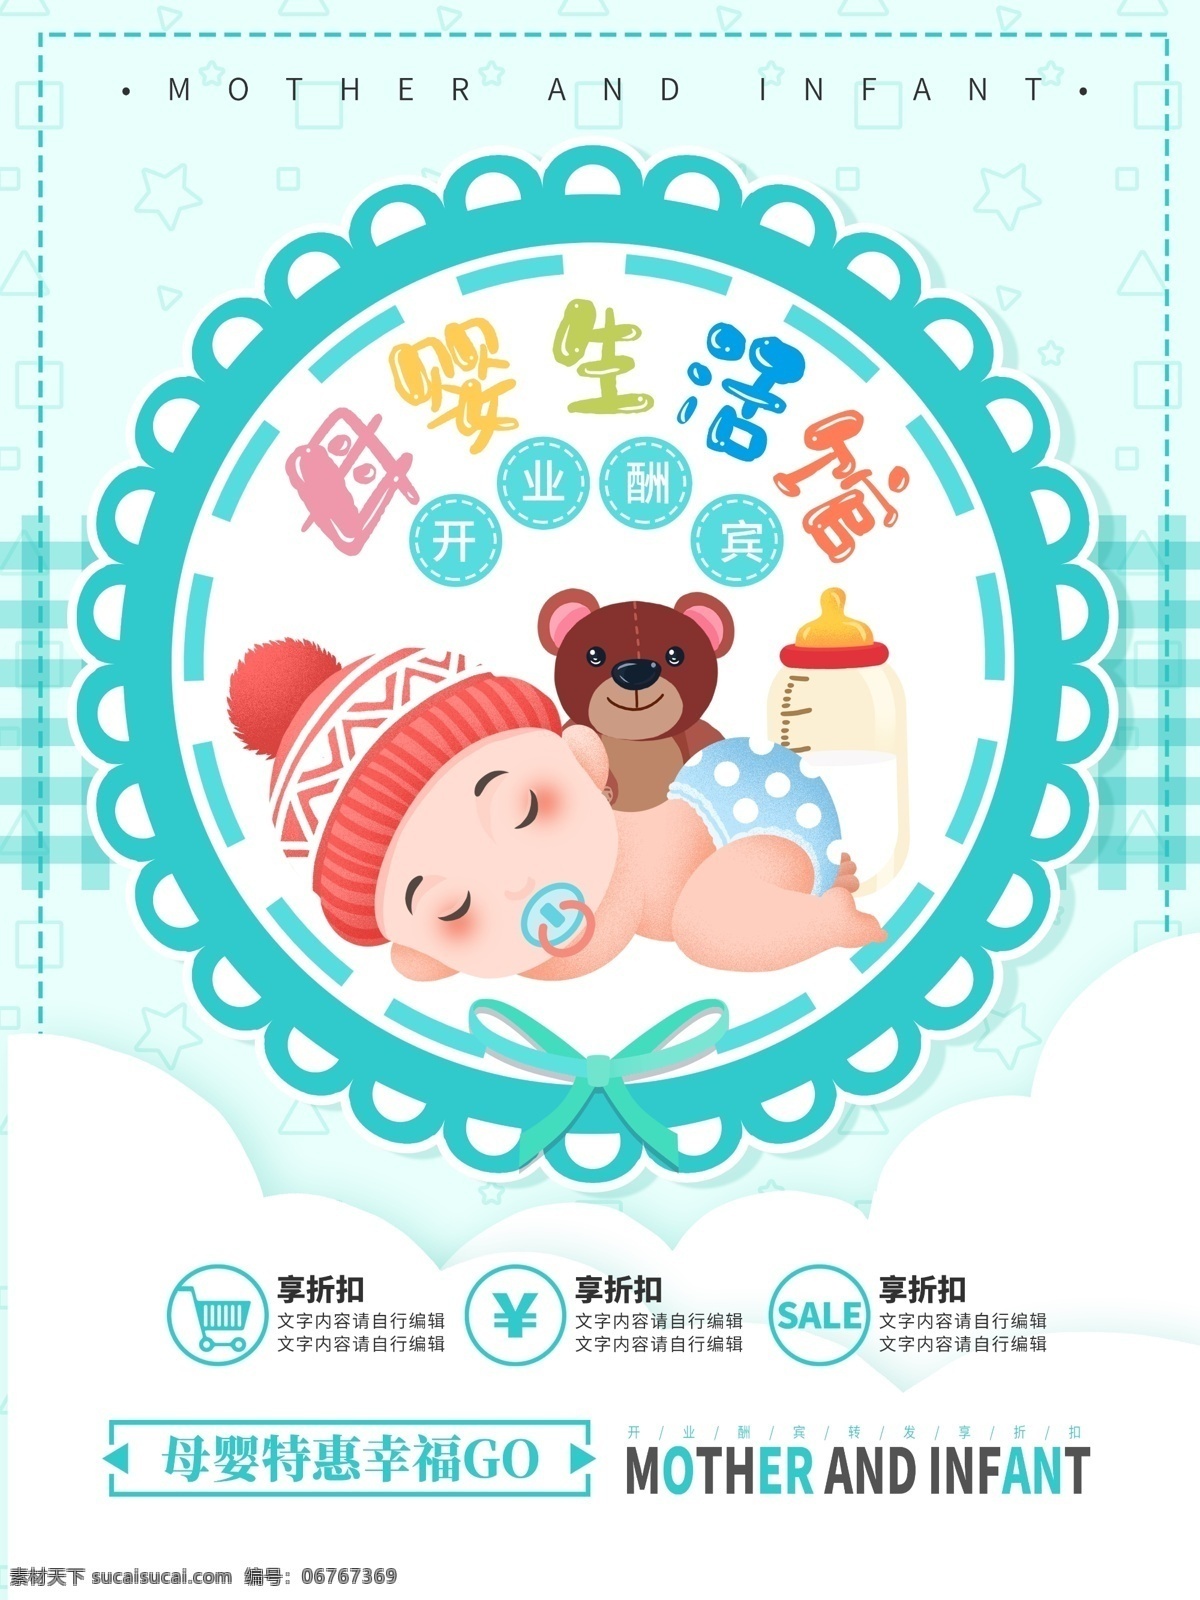 原创 插画 母婴 生活 馆 促销 海报 用品 母婴用品海报 卡通 母婴用品 婴儿用品 婴儿 婴儿插画